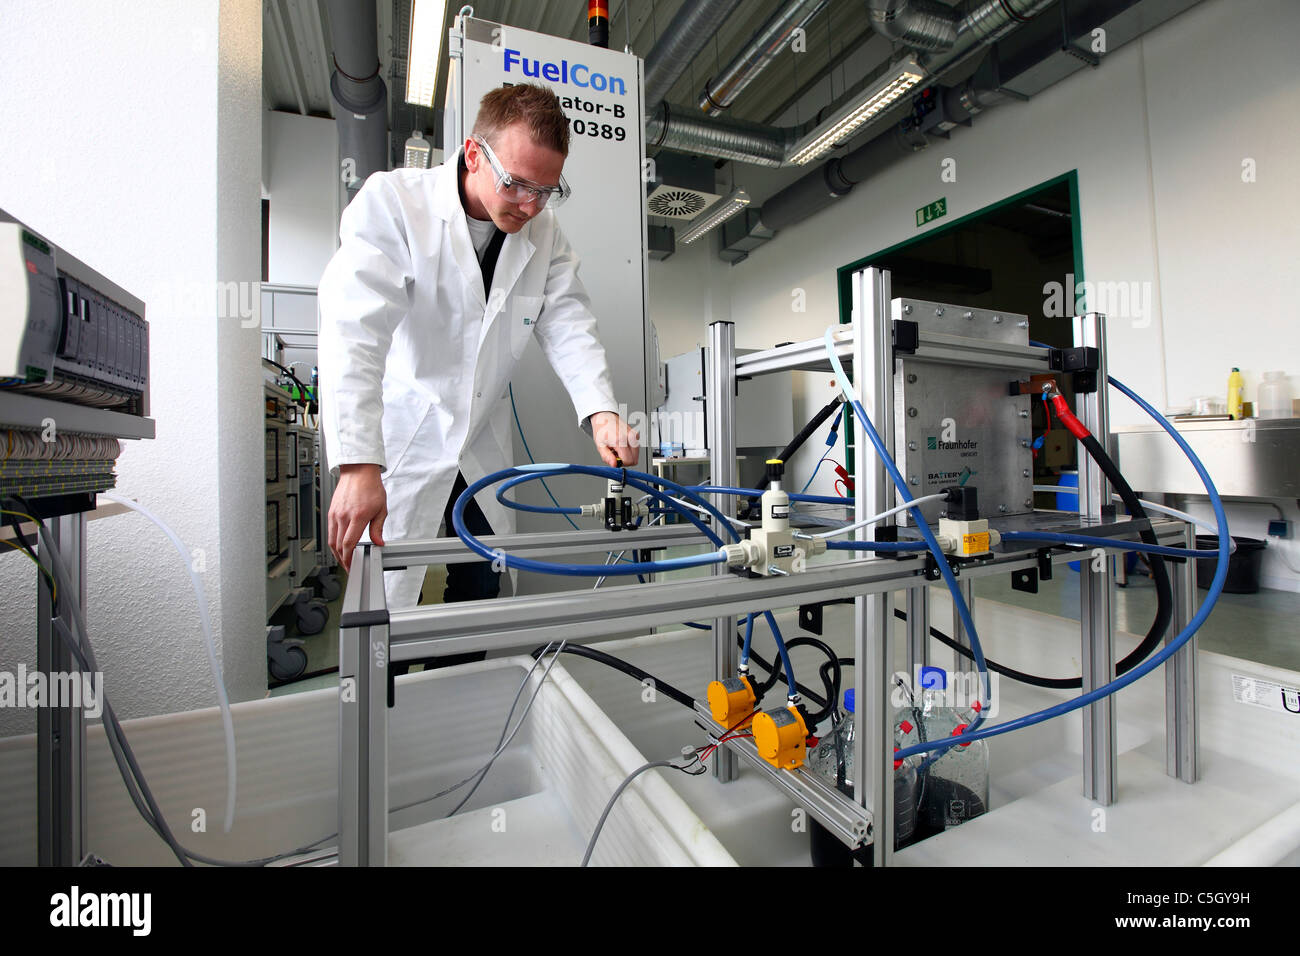 L'institut Fraunhofer UMSICHT pour la recherche scientifique. Des recherches Redox-Flow, batteries pour le stockage de l'énergie renouvelable. Banque D'Images